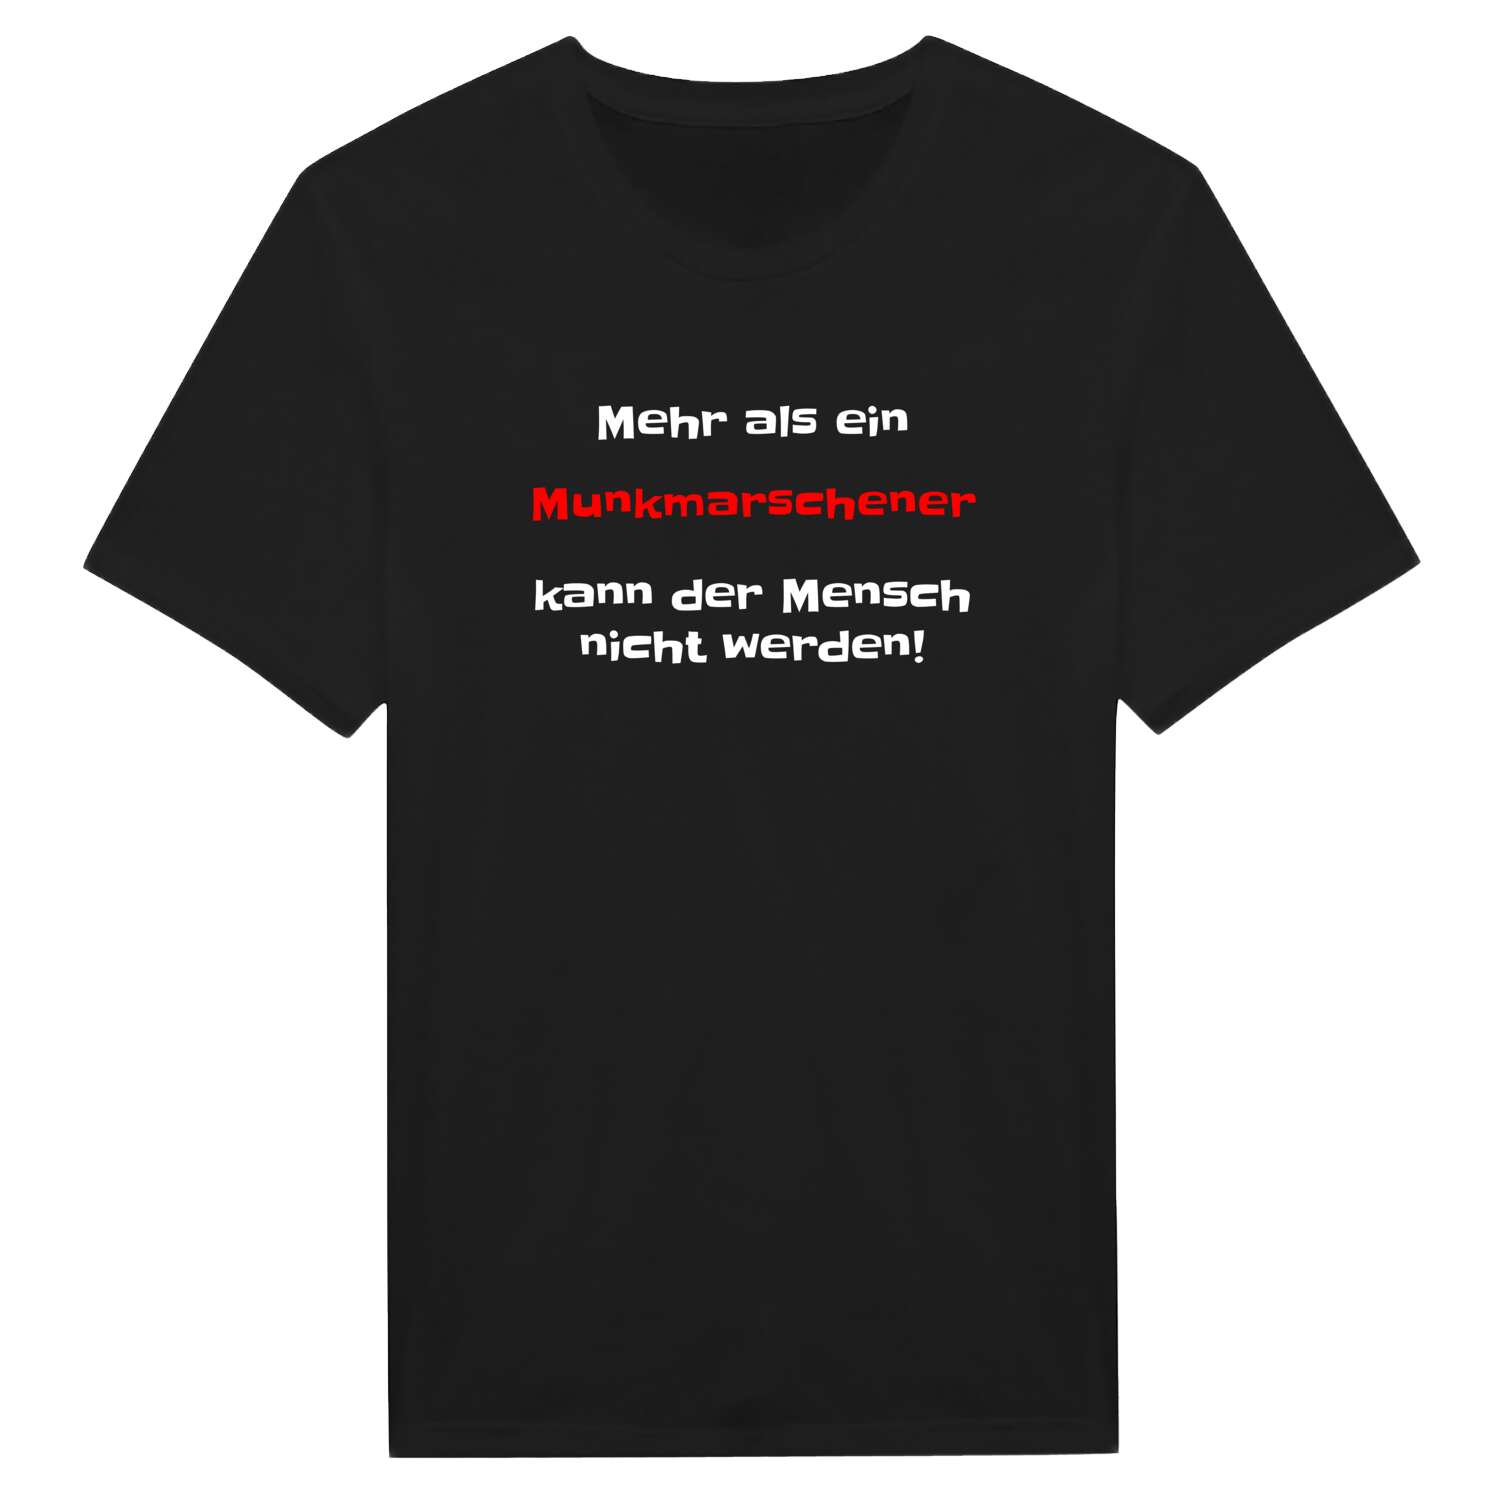 Munkmarsch T-Shirt »Mehr als ein«